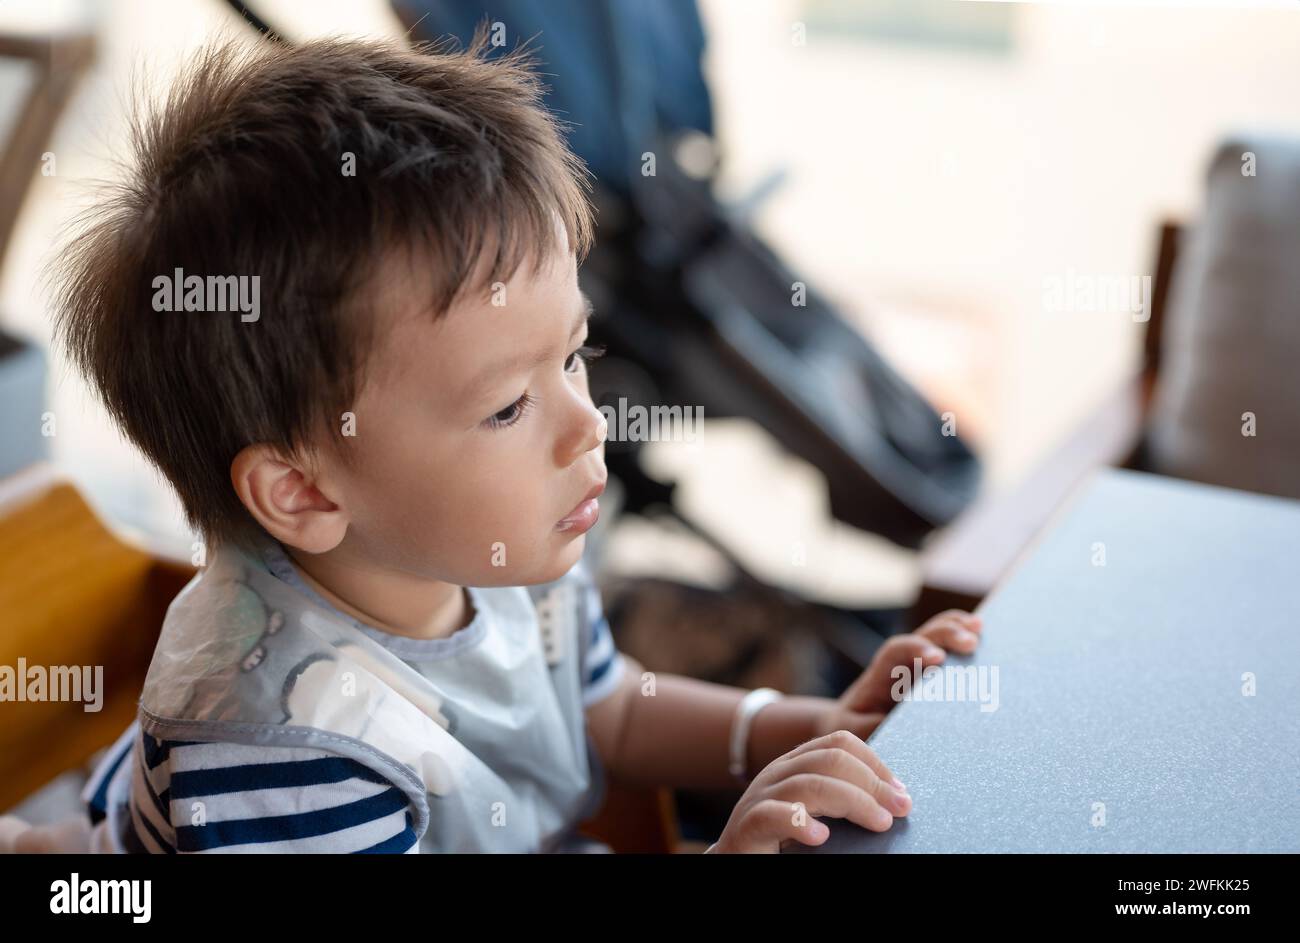 Nahaufnahme Porträt eines kleinen süßen Jungen in einem gestreiften T-Shirt, der in einem Hochstuhl in einem Restaurant sitzt und geduldig auf sein Mittagessen wartet Stockfoto